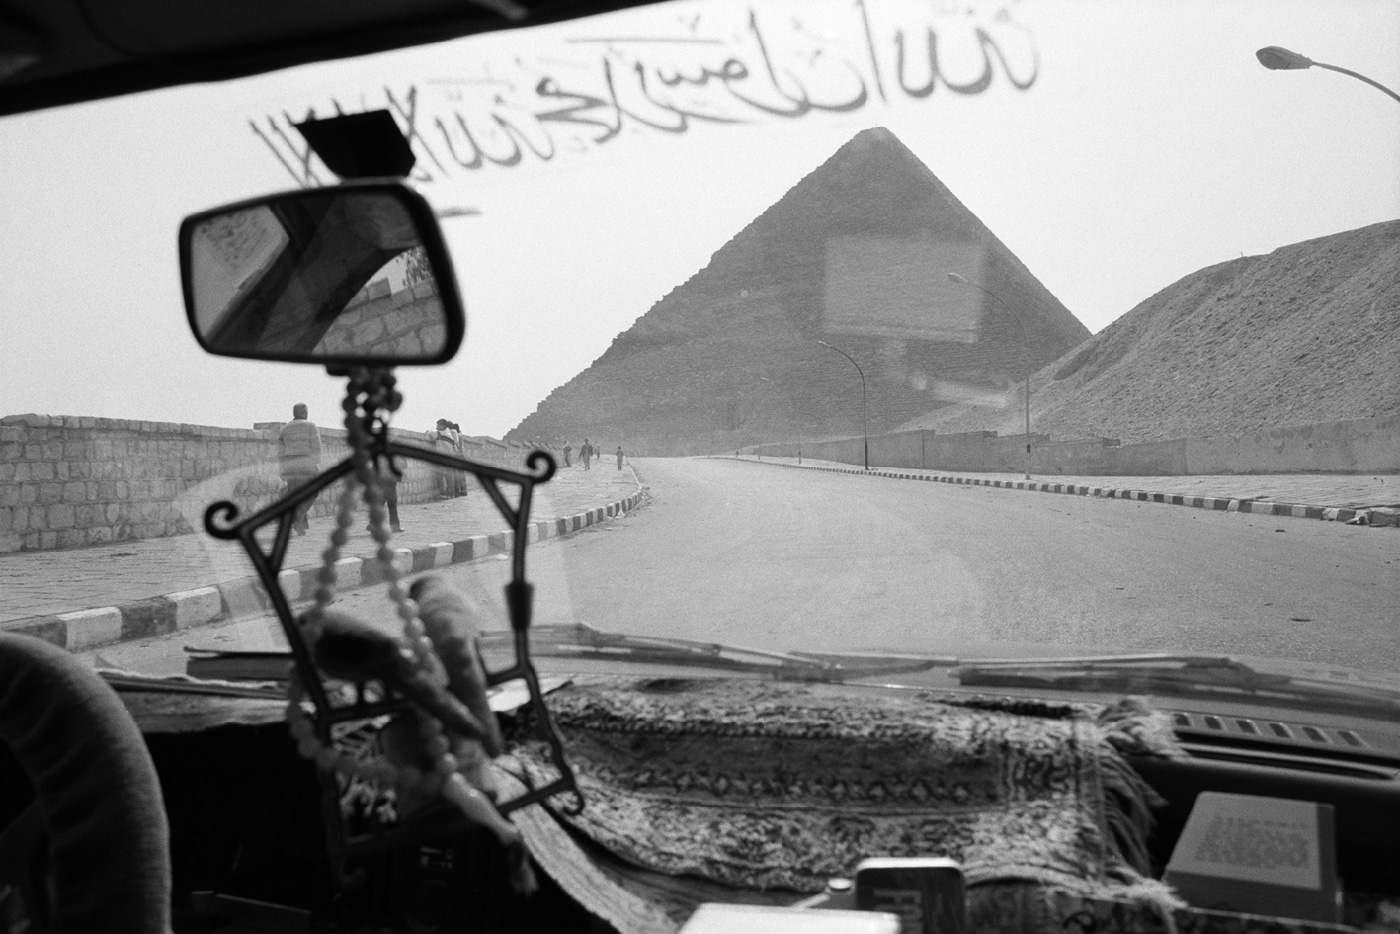 denis-roche 23 février 1985. Égypte, Pyramide de Khéops